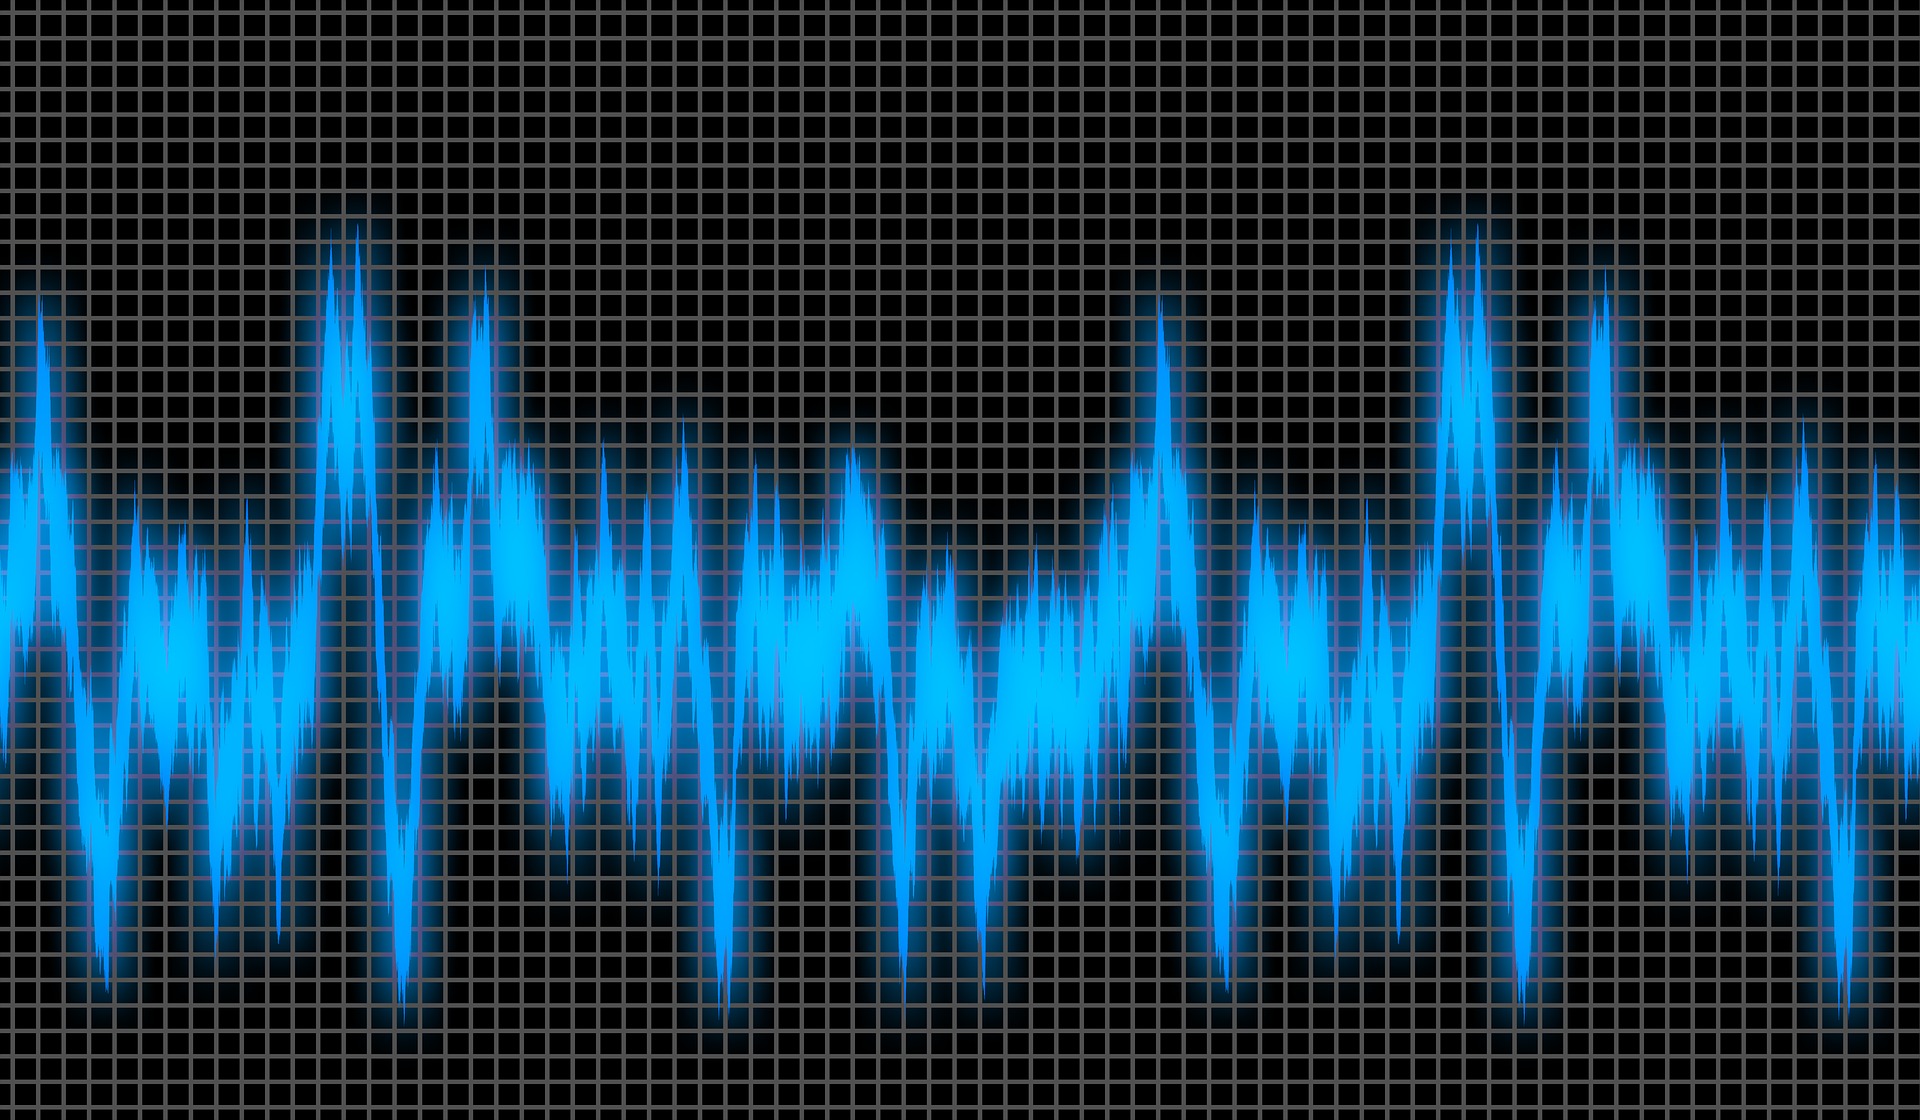 Onda de sonido en un osciloscopio en azul sobre negro